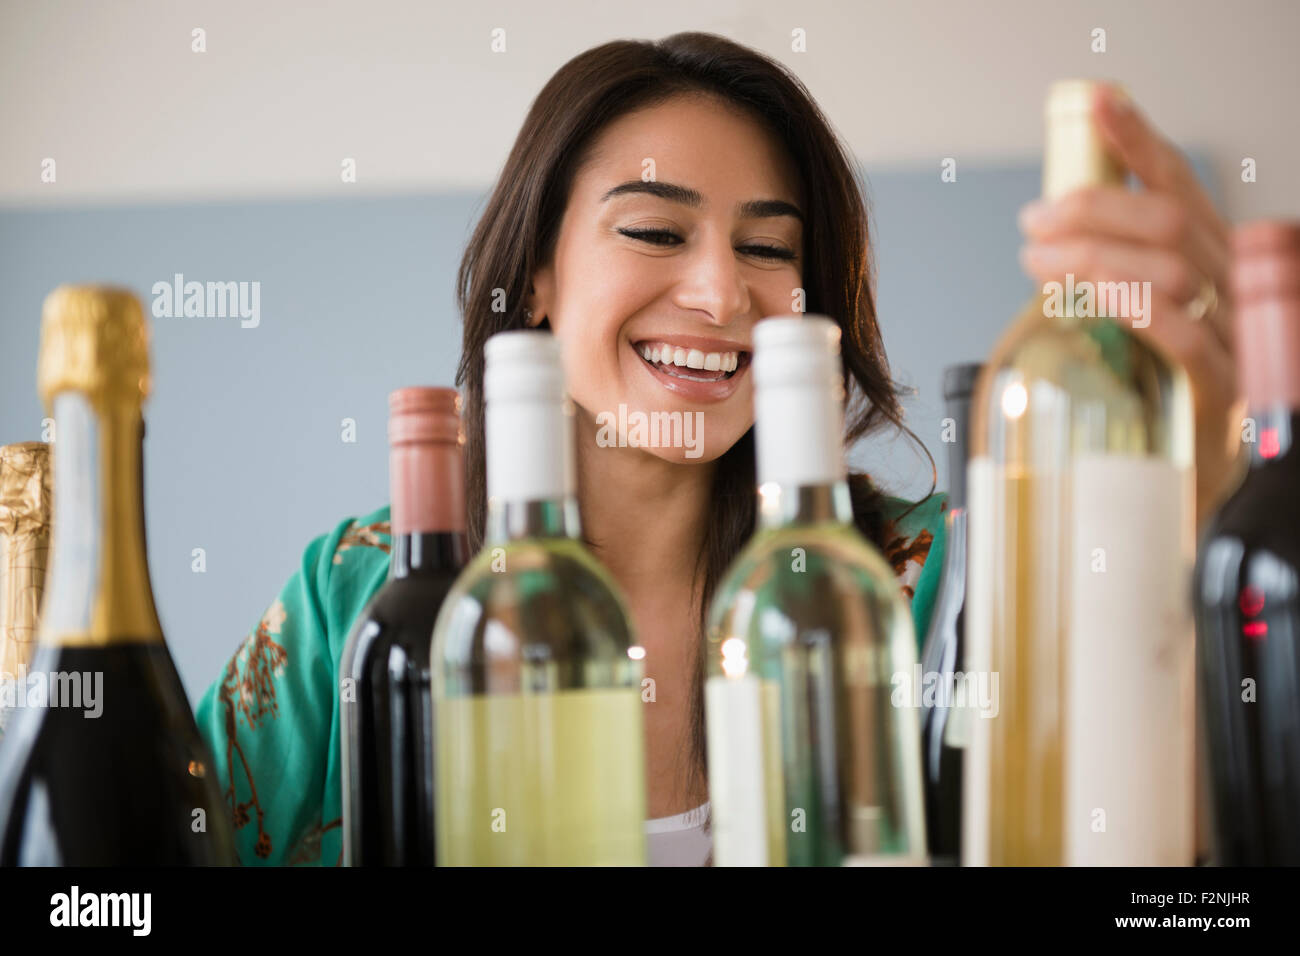 Woman choosing bottle of wine Stock Photo